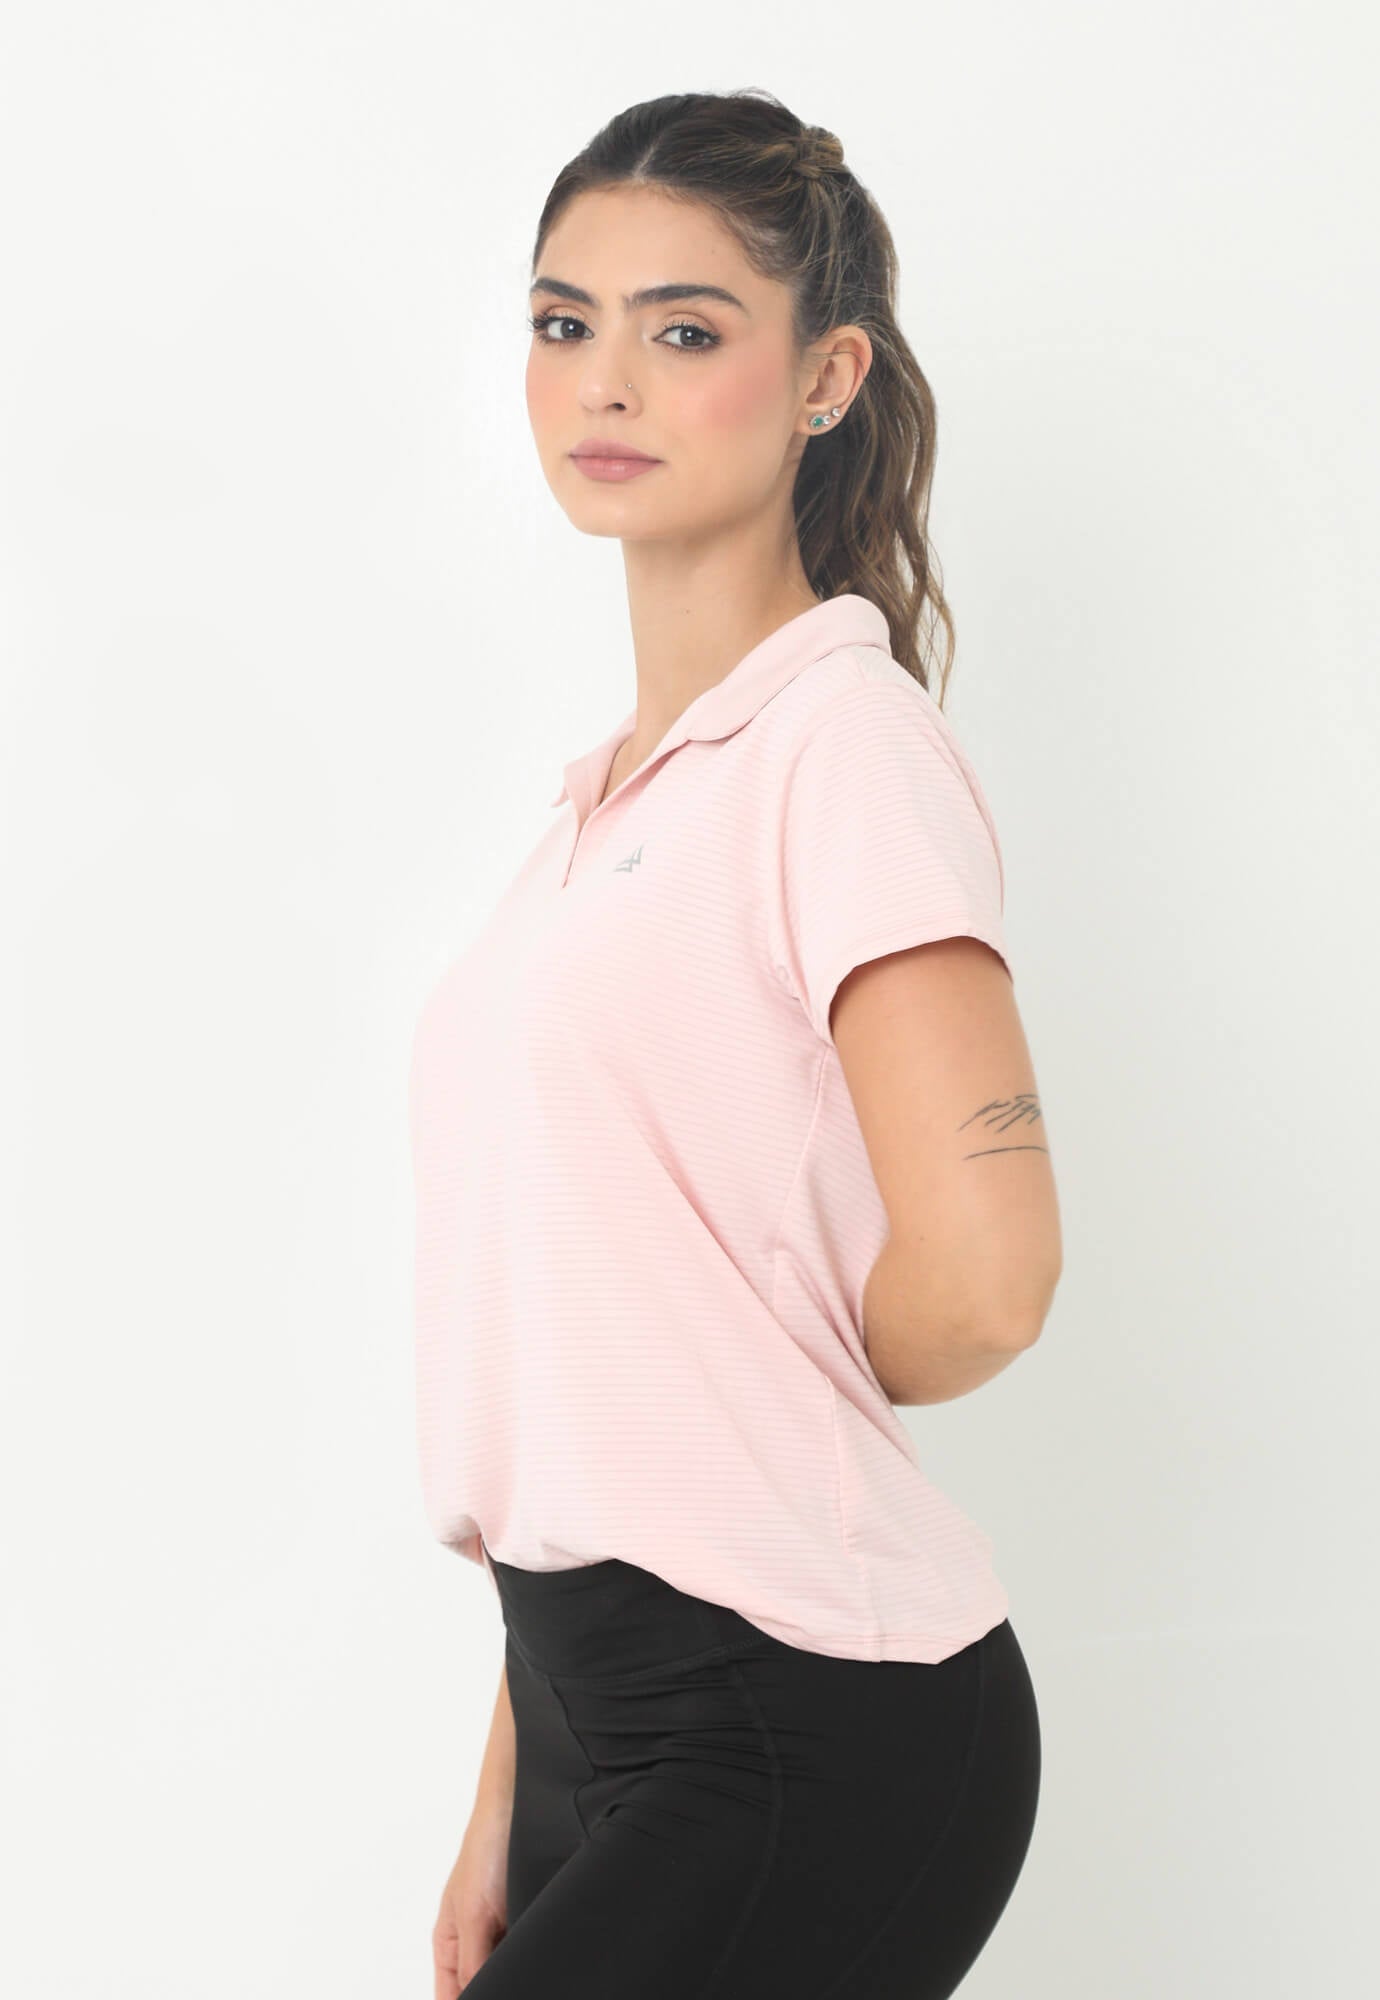 Camiseta deportiva rosada con cuello camisero y transfer reflectivo en frente para mujer